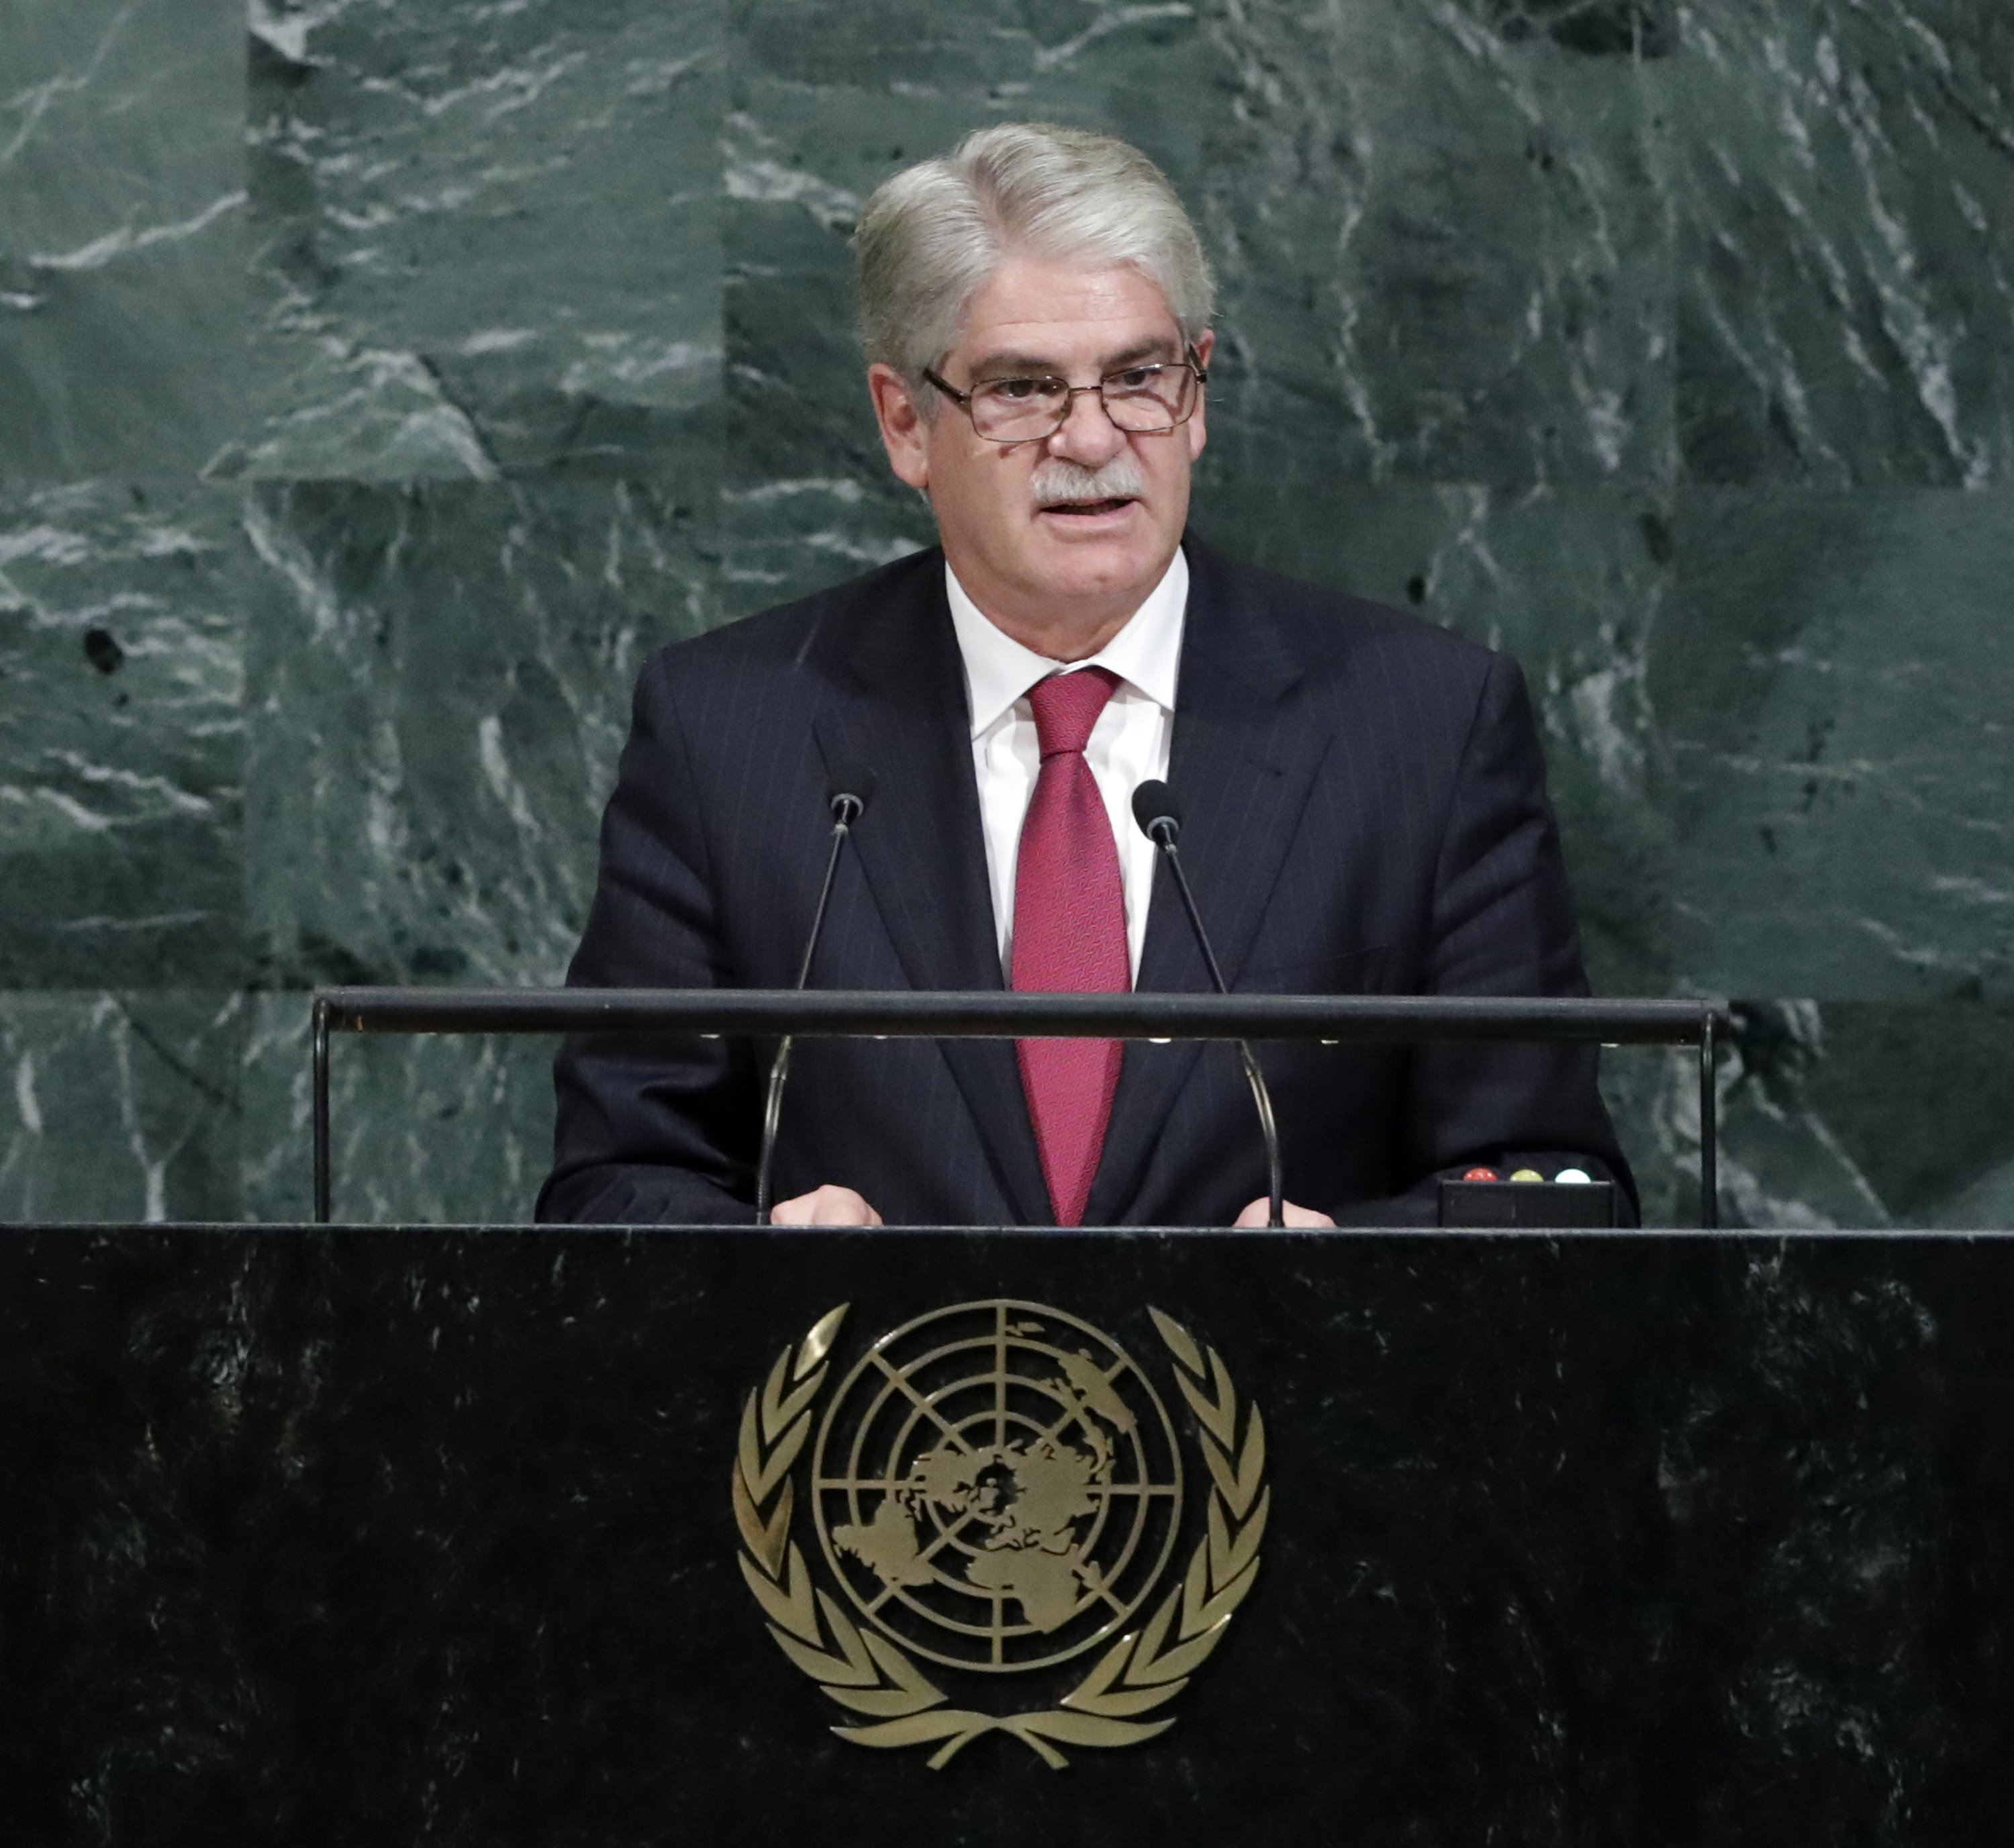 Dastis, sobre Catalunya a l'ONU: "És un atac greu a la convivència"